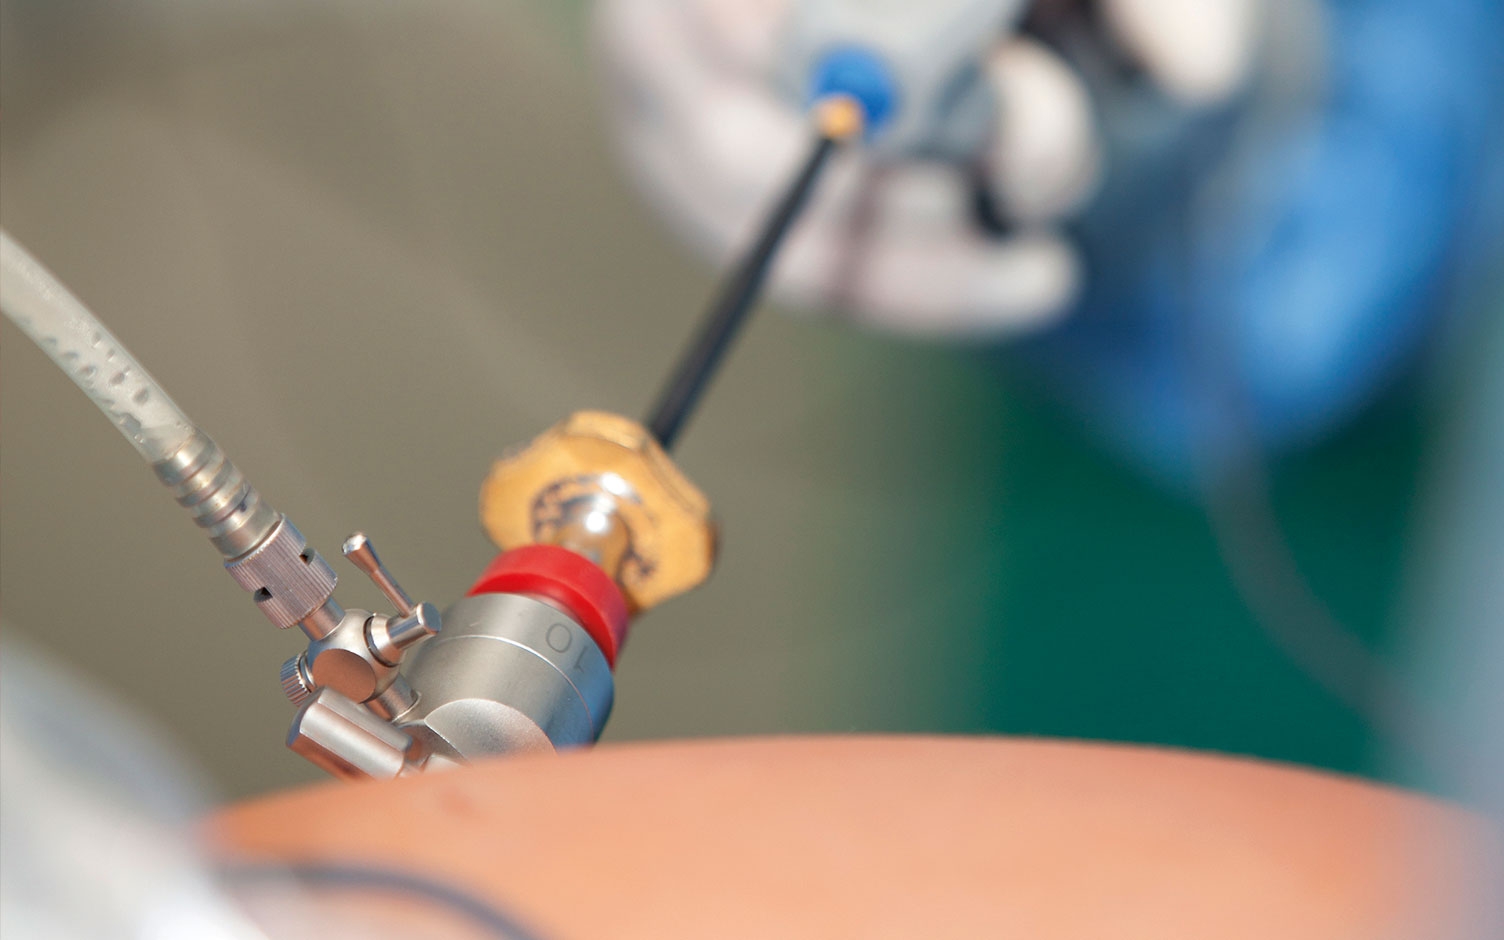 Cirugía ginecológica laparoscópica: una opción mínimamente invasiva